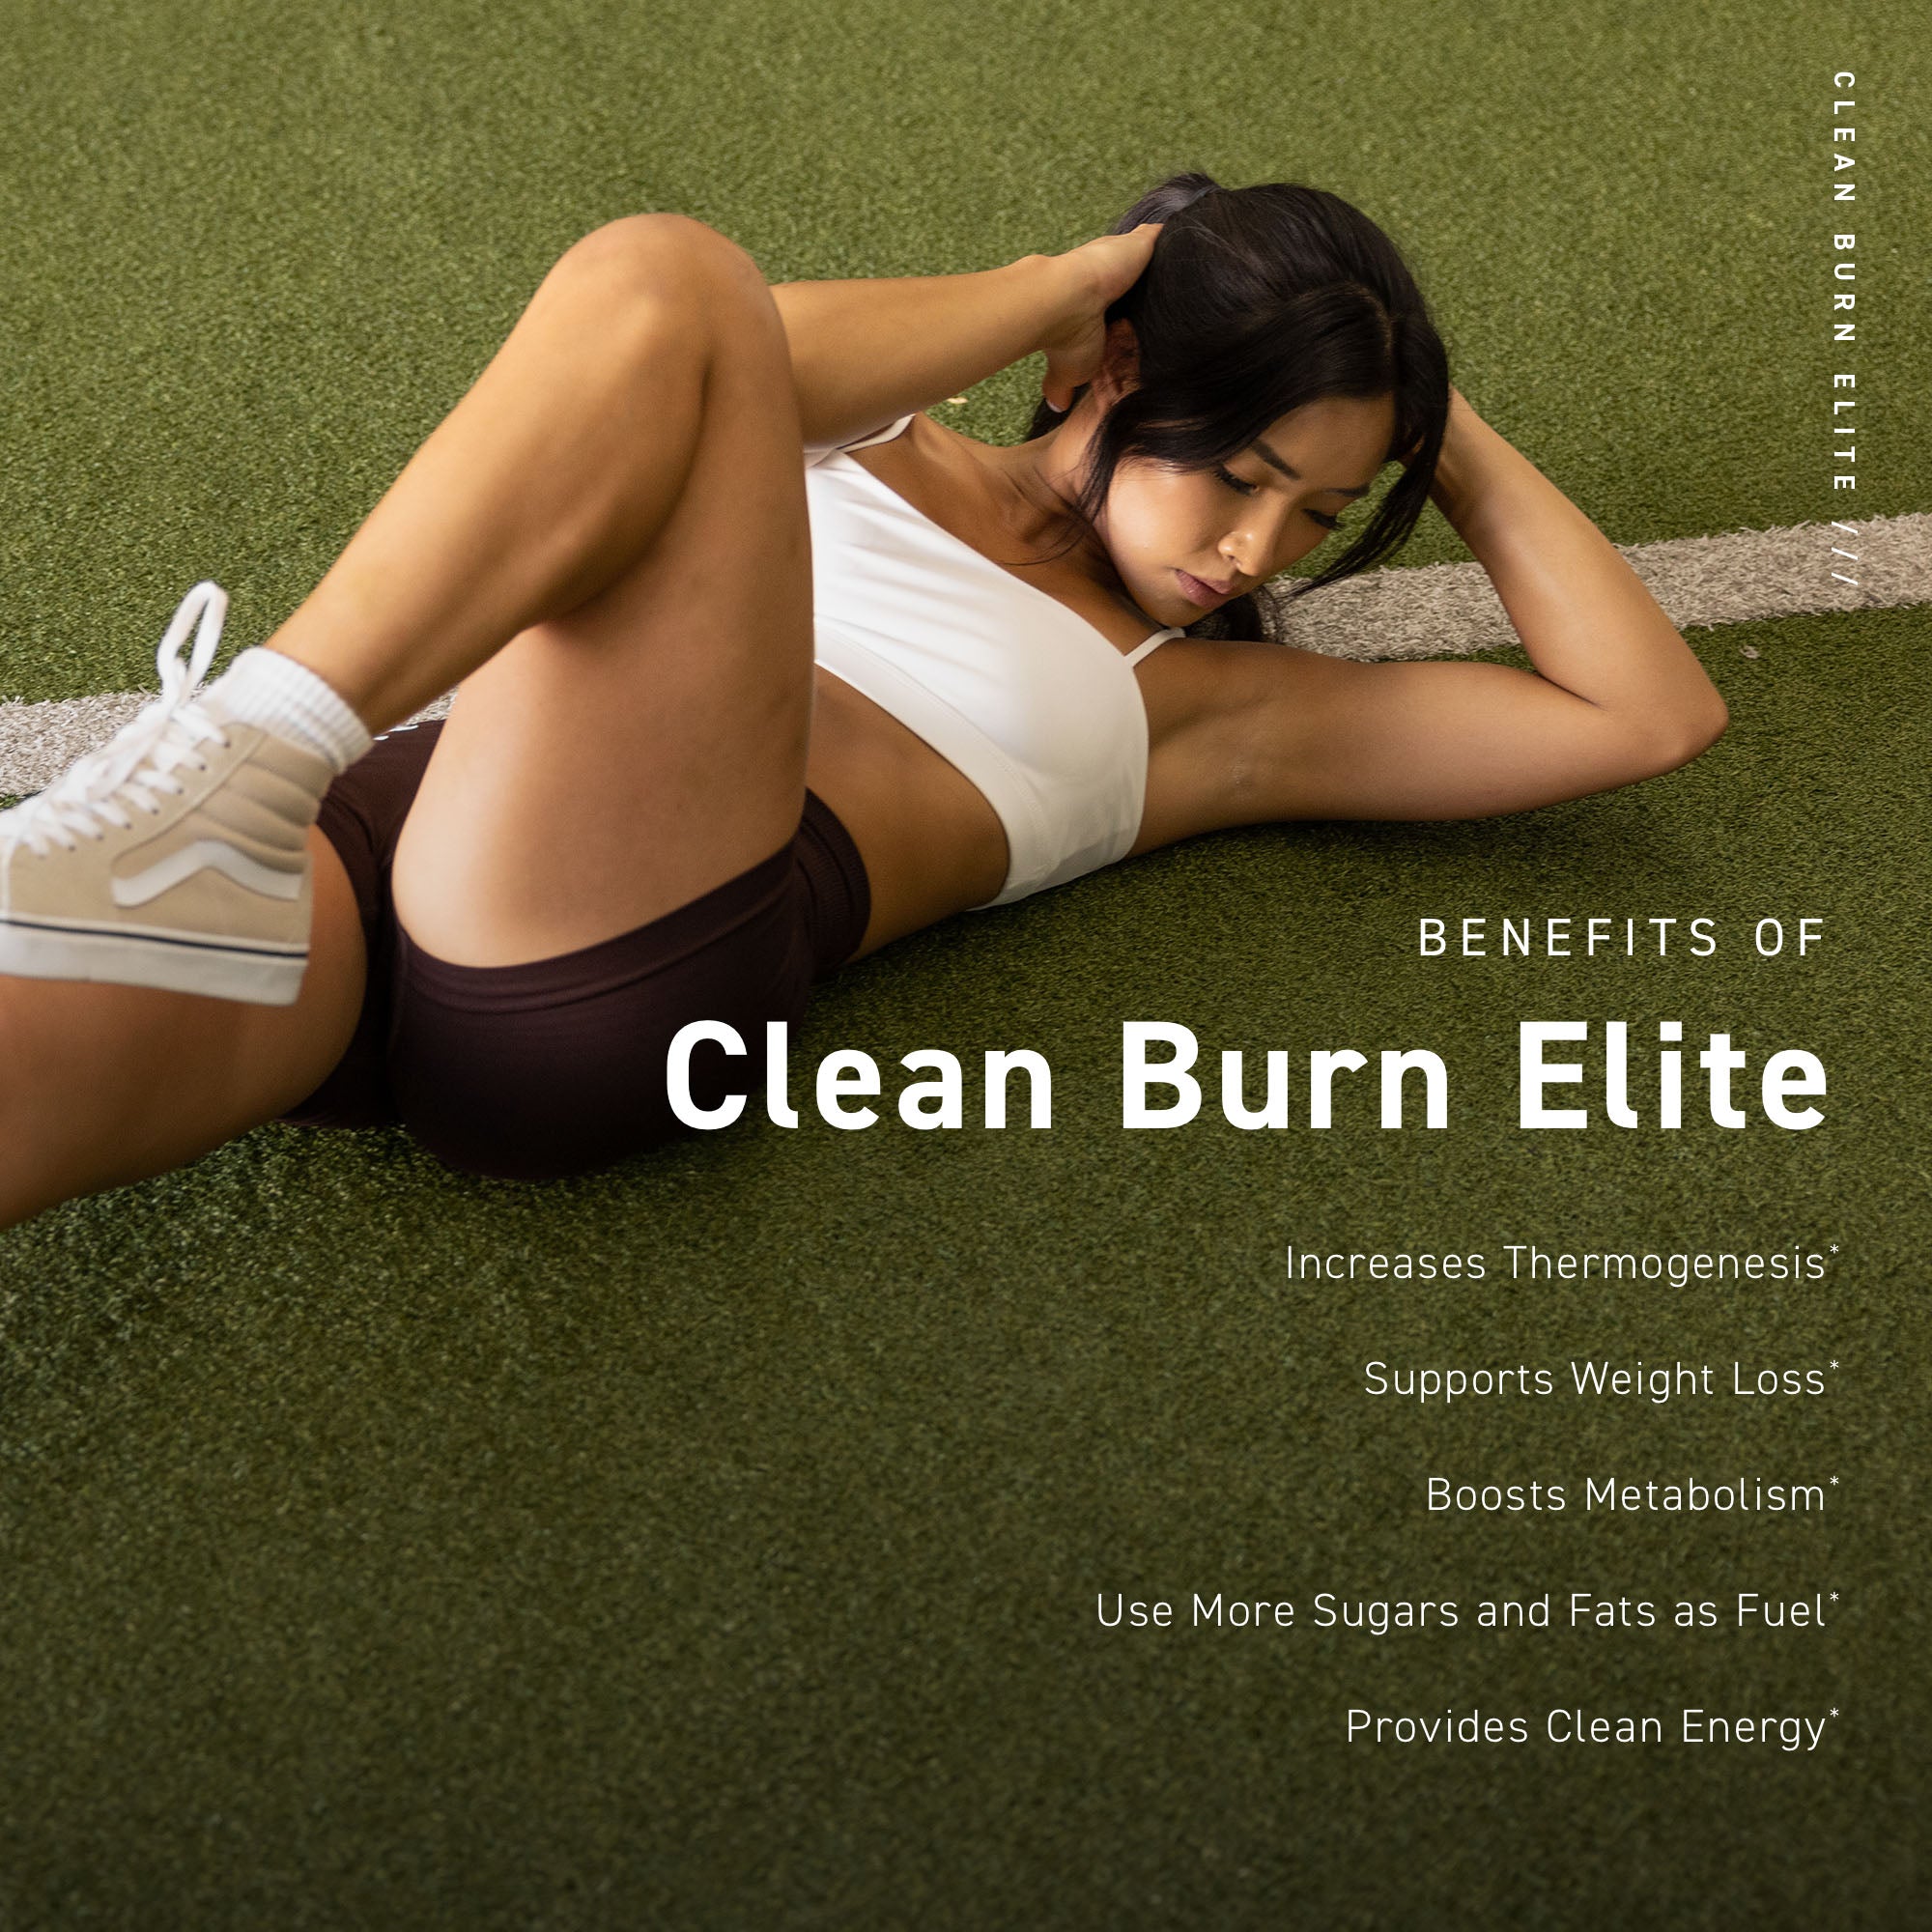 Clean Burn Elite